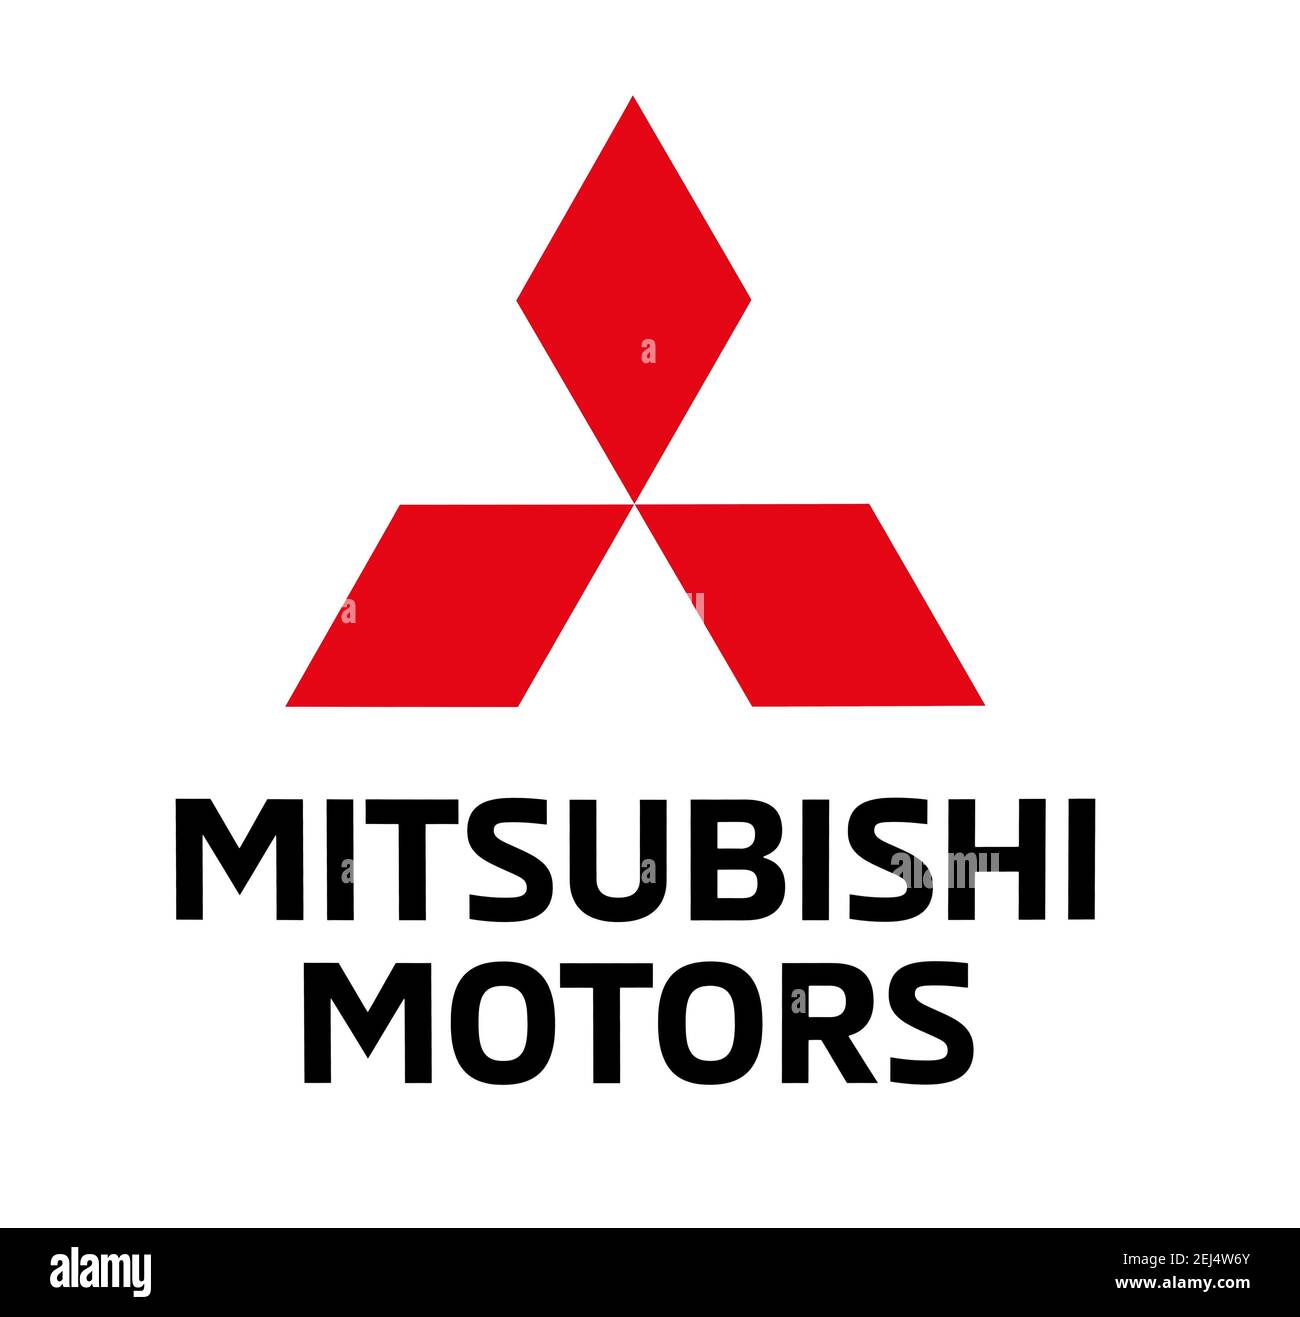 Logo de la marque Mitsubishi Motors, espace libre sur fond blanc Banque D'Images